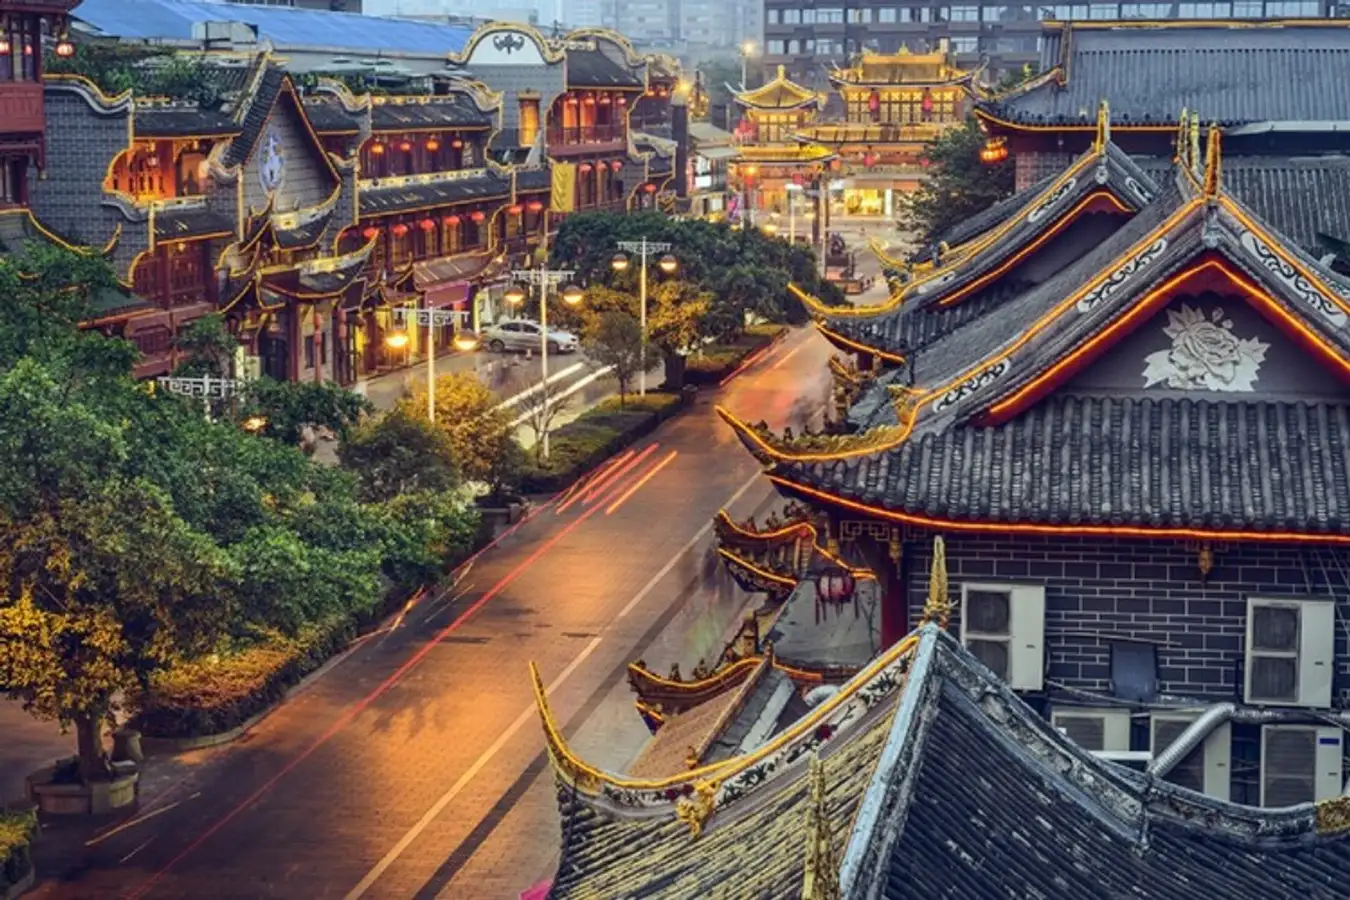 Tour Trung Quốc: Thành Đô - Trùng Khánh - Đô Giang Yển 6 ngày 5 đêm từ Hà Nội